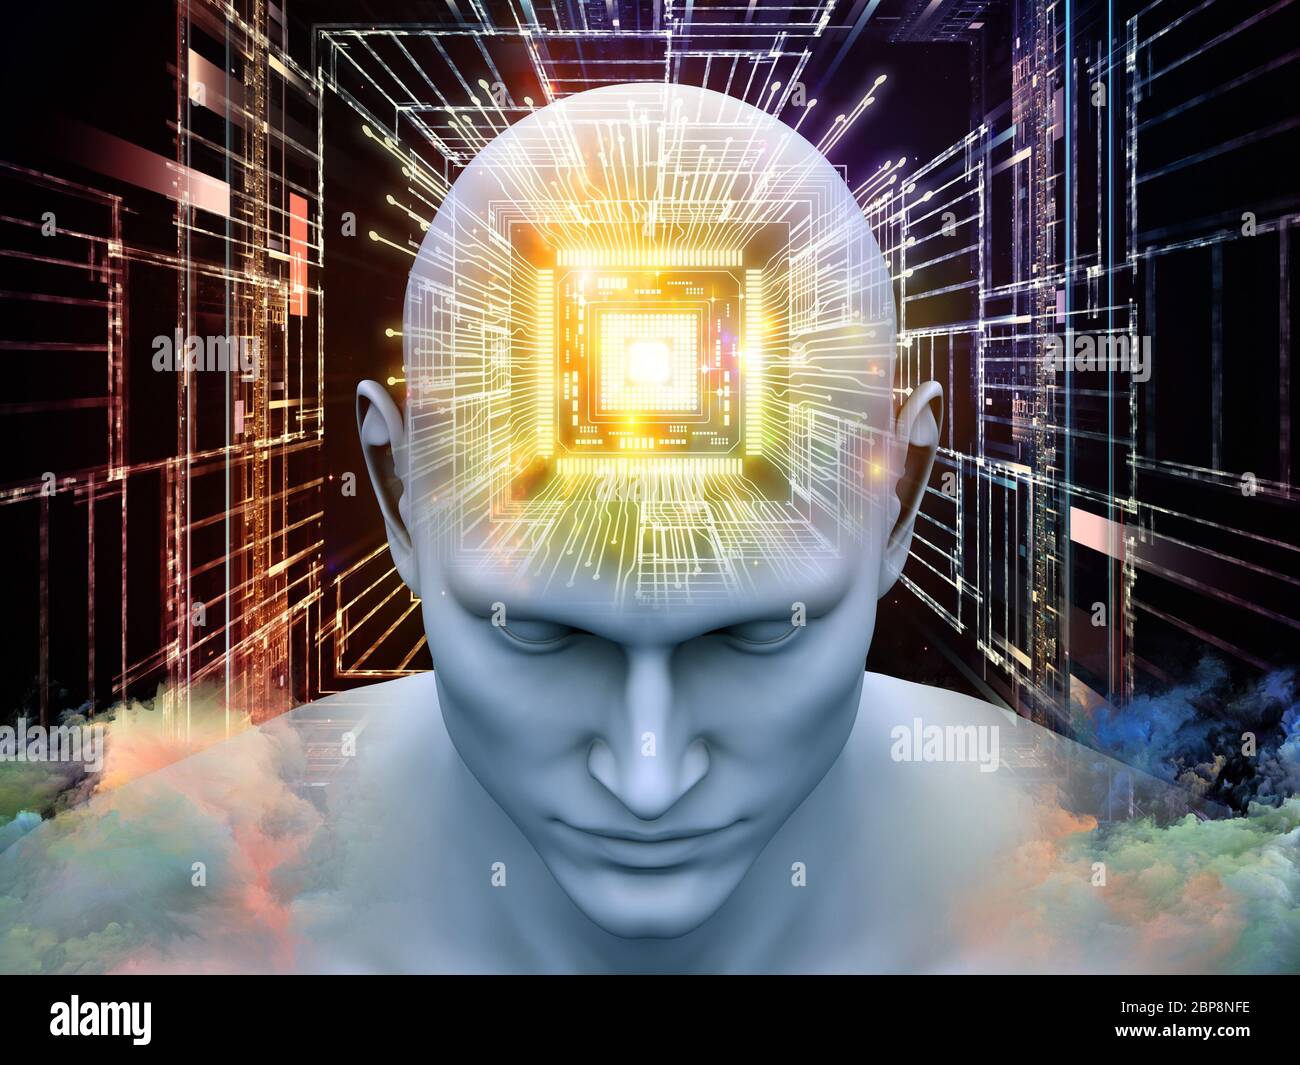 Processeurs Mind. Illustration 3D de la tête humaine avec processeur en perspective adaptée aux projets sur l'intelligence artificielle, l'esprit, les médias de masse et m Banque D'Images